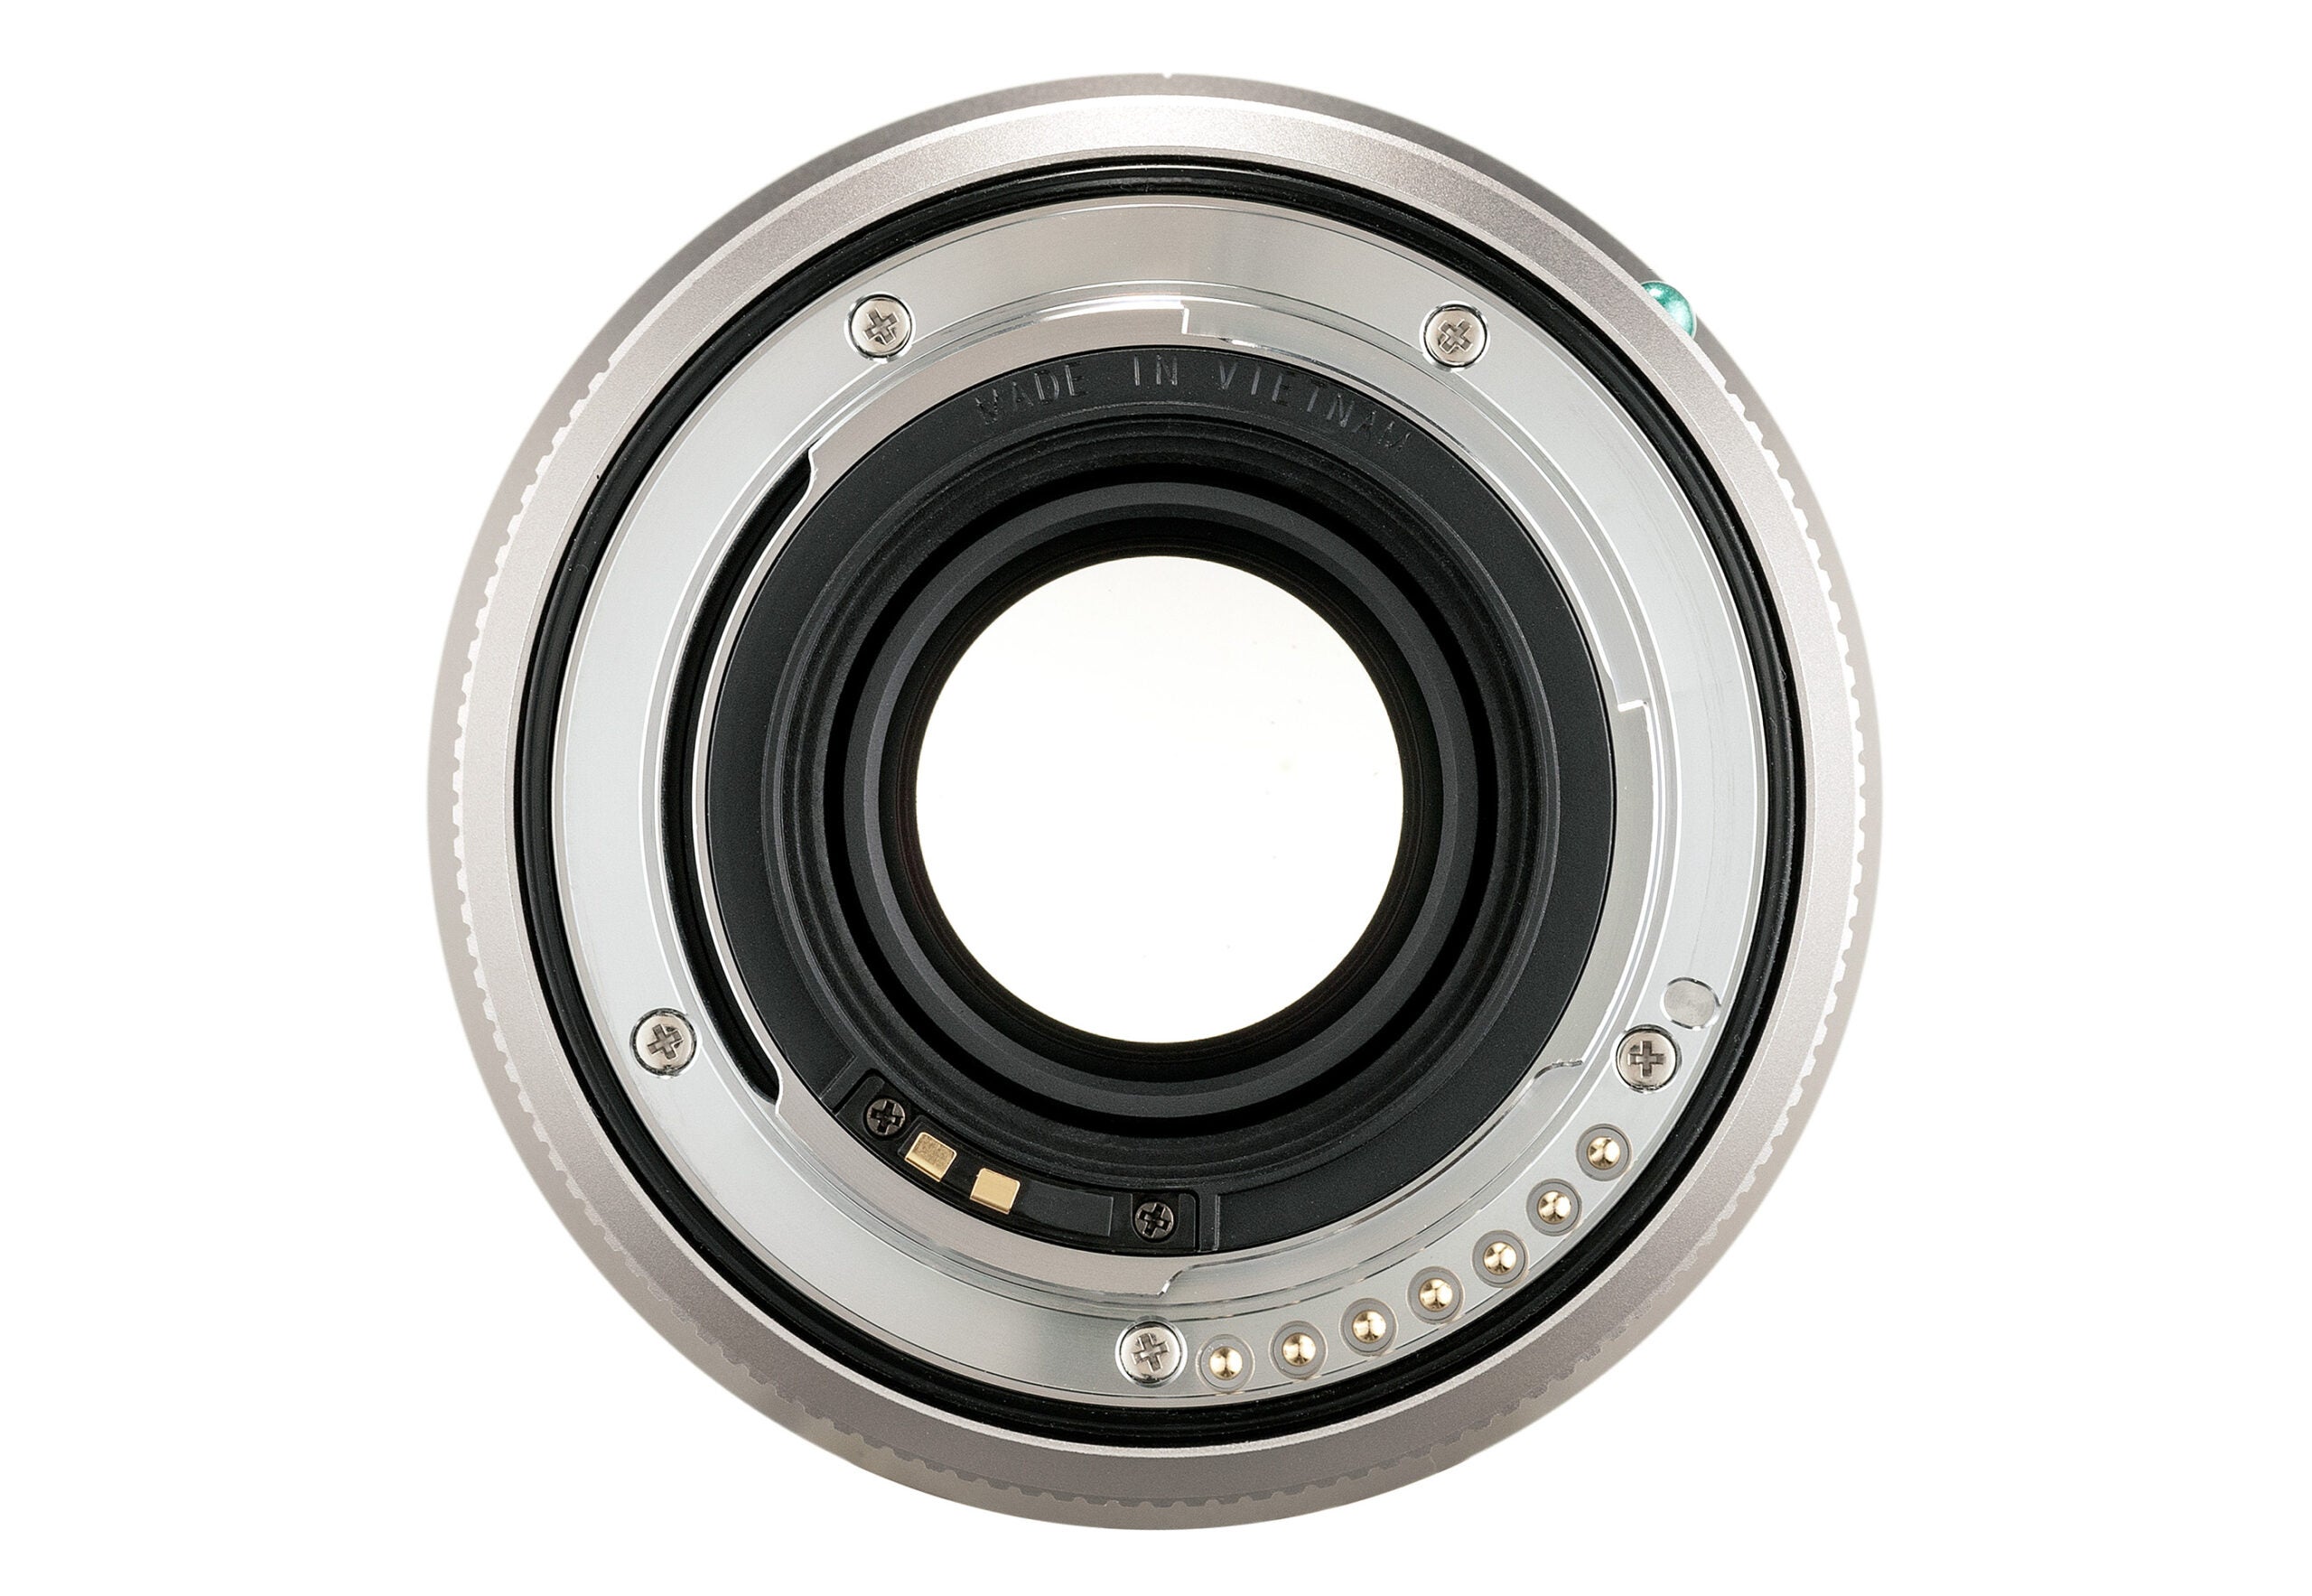 Meet Pentax's new 21mm f/2.4 Limited lens